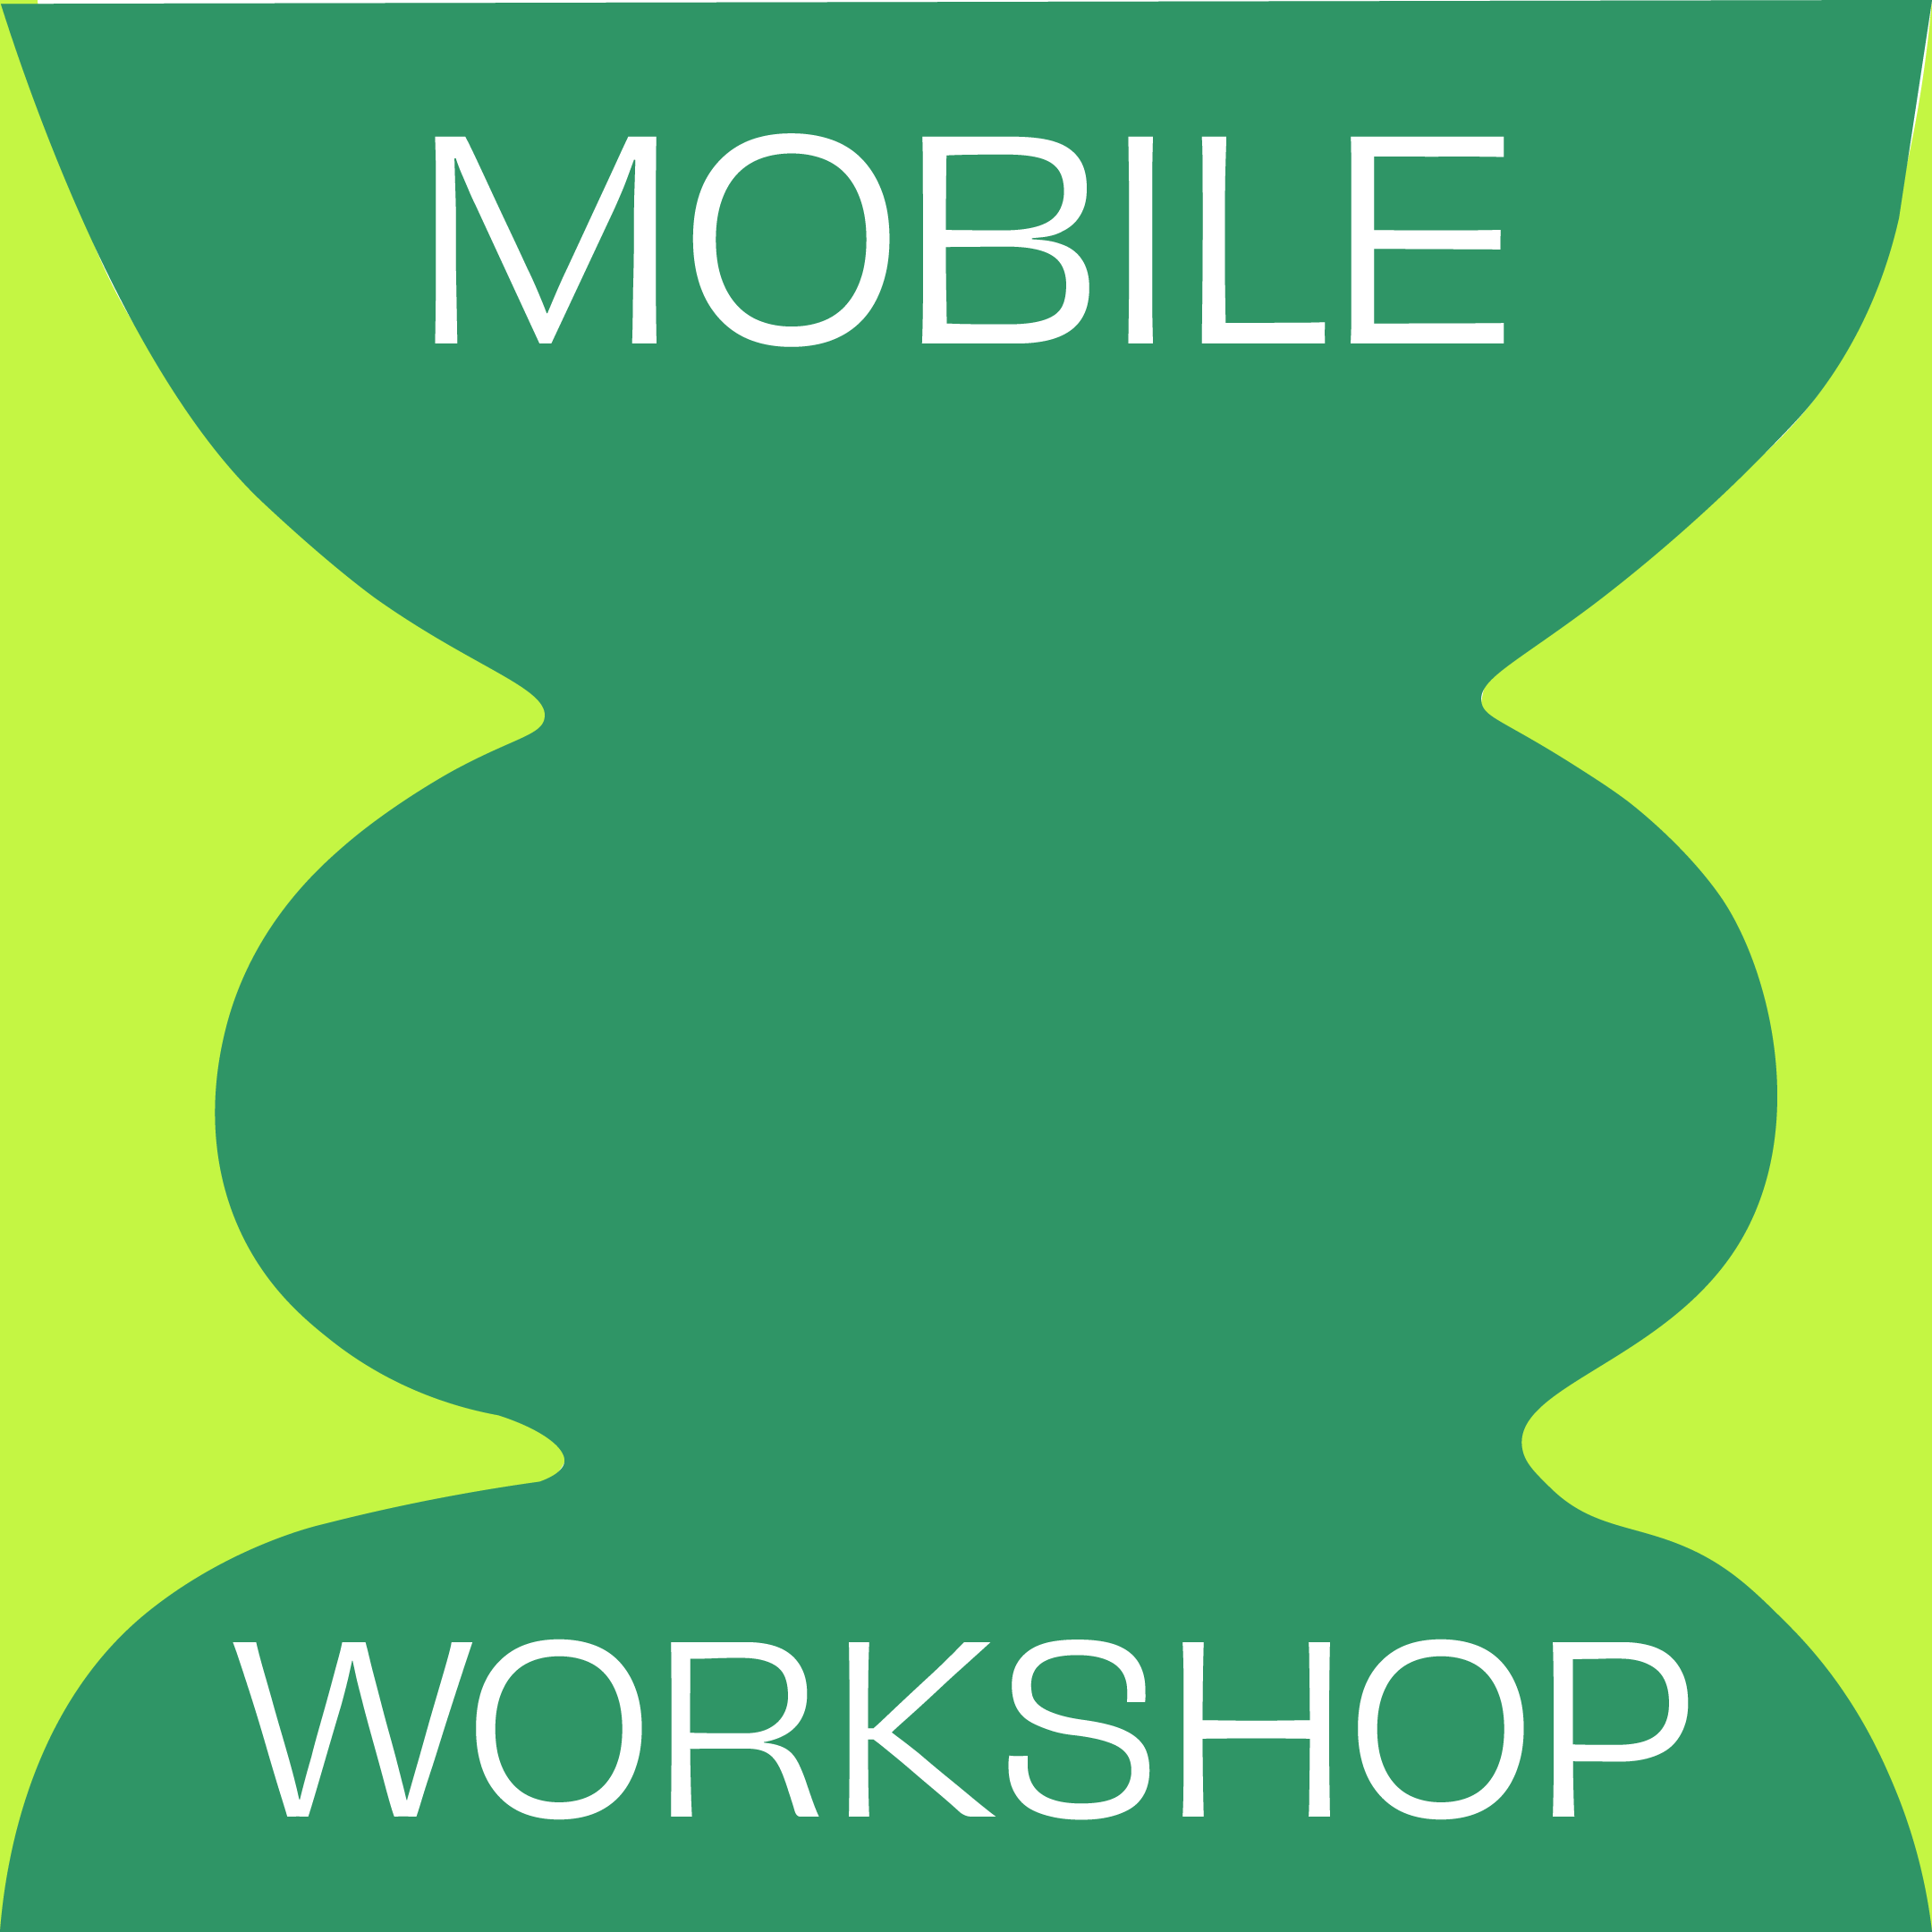 Mobile workshop 07/13